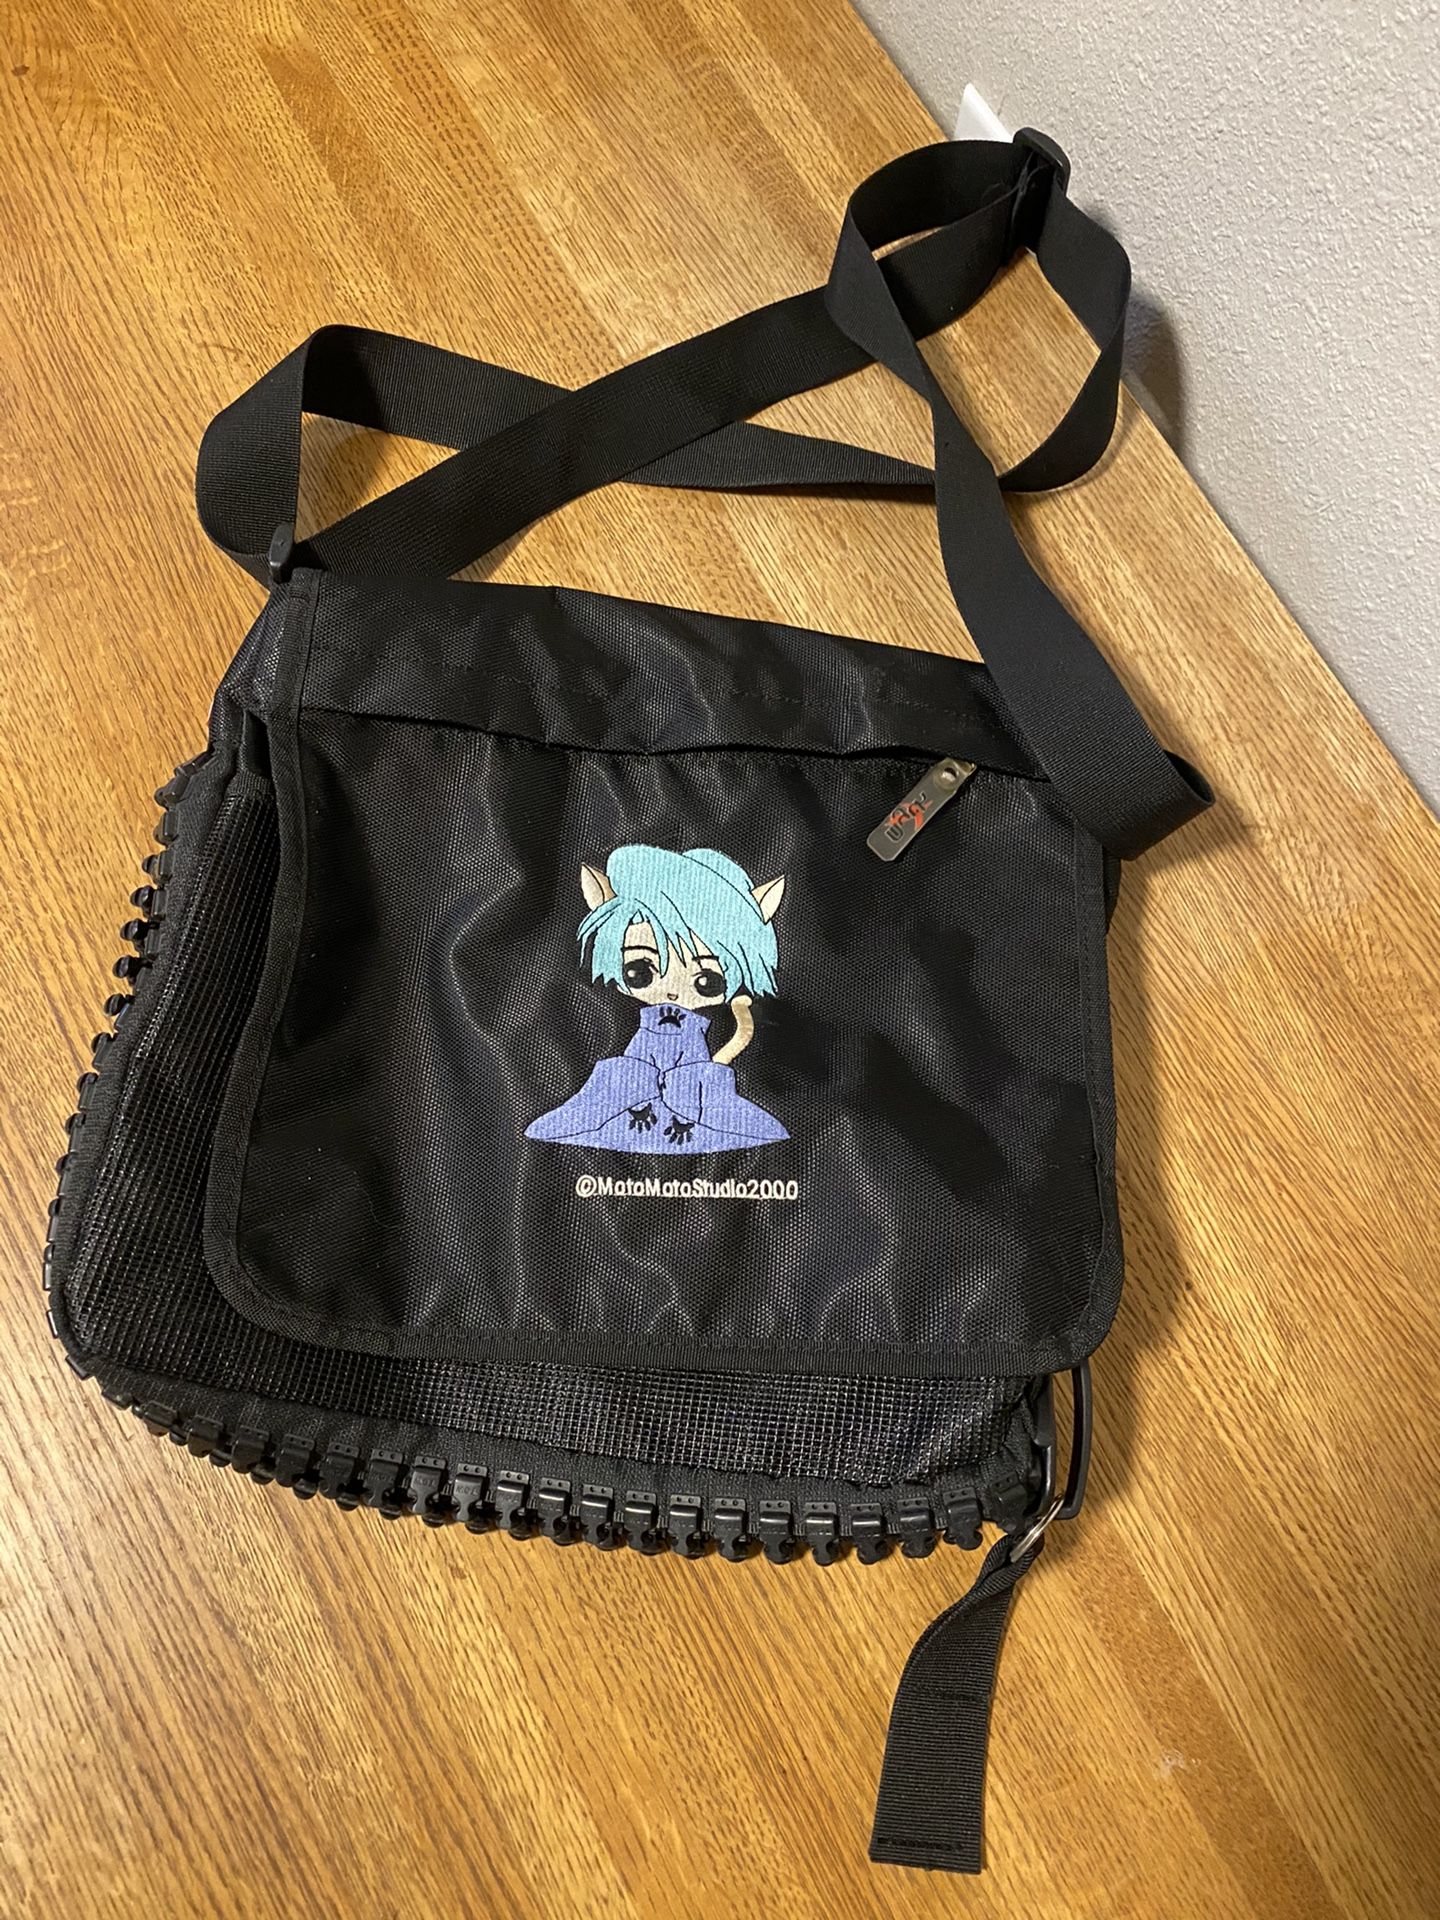 Anime Messenger Bag Cosplay